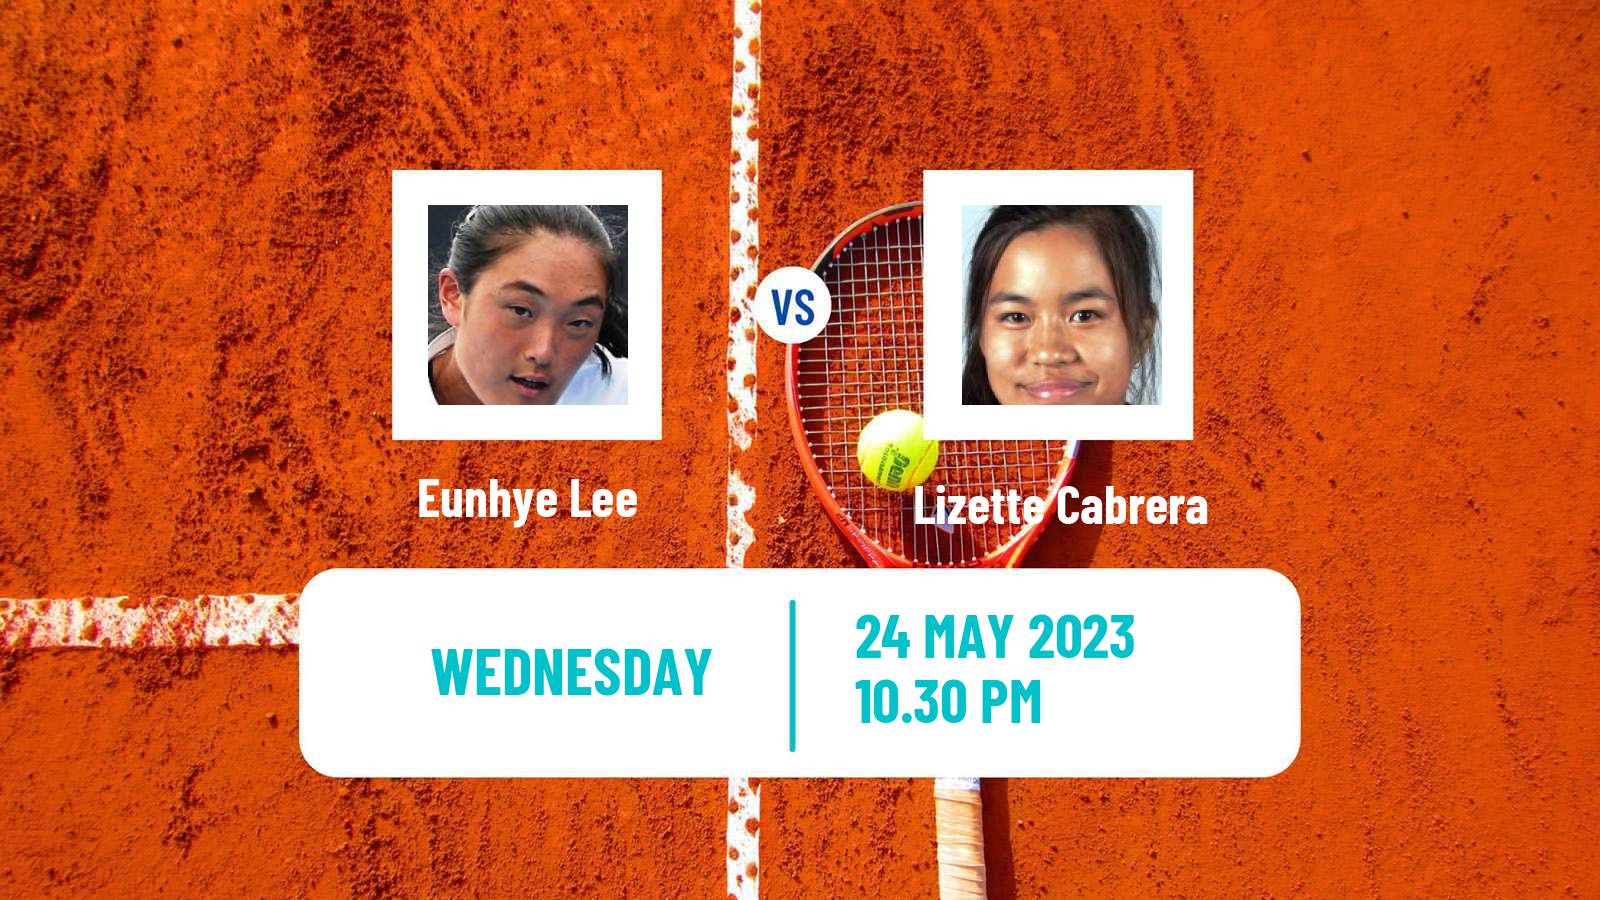 Tennis ITF W25 Goyang Women Eunhye Lee - Lizette Cabrera